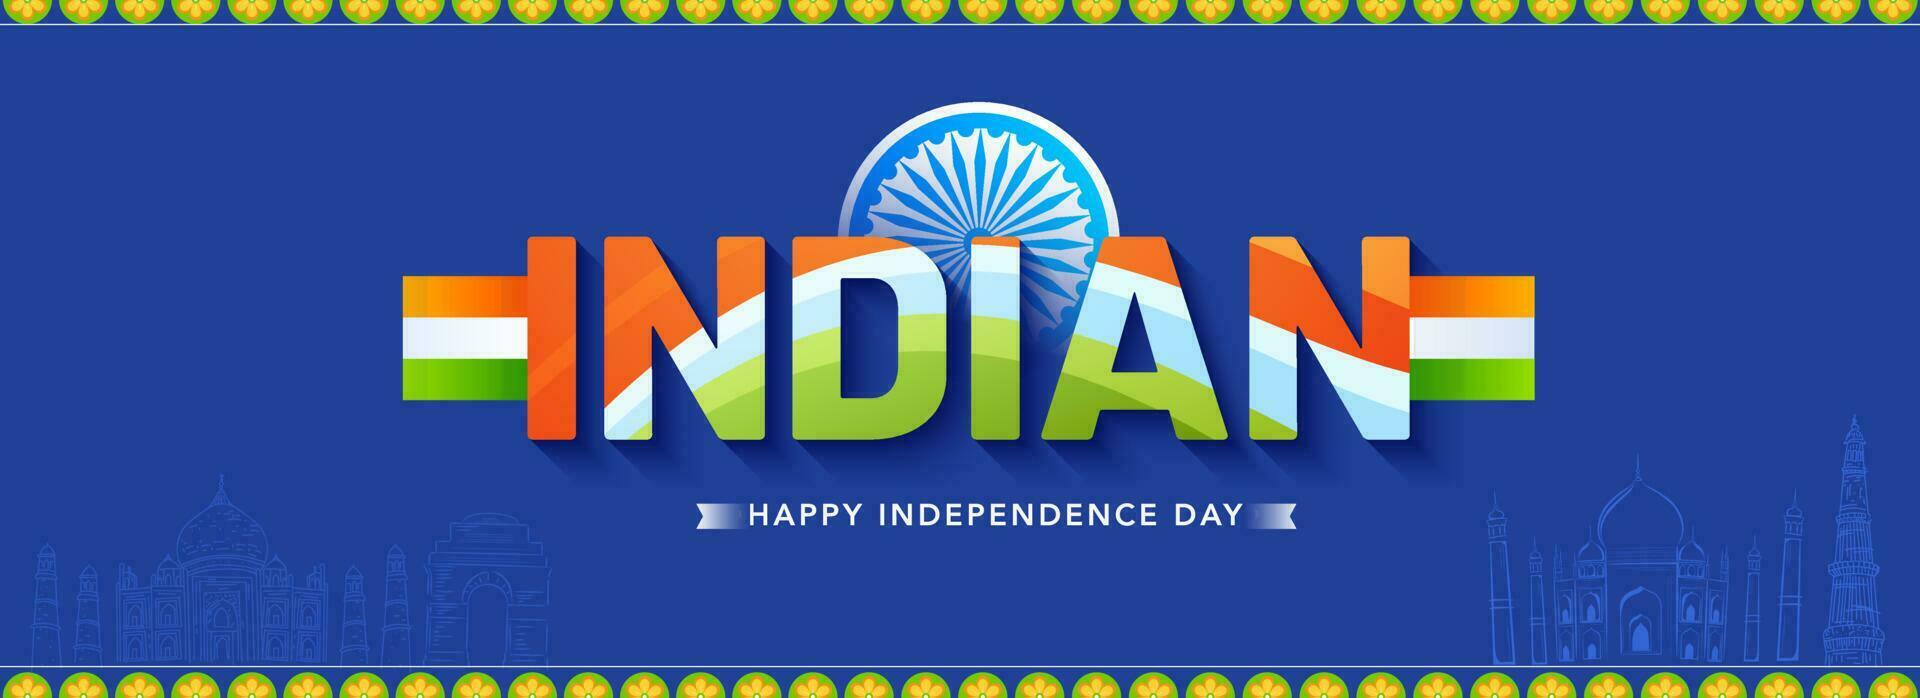 tricolor indisk text med ashoka hjul på blå känd monument bakgrund för Lycklig oberoende dag begrepp. vektor